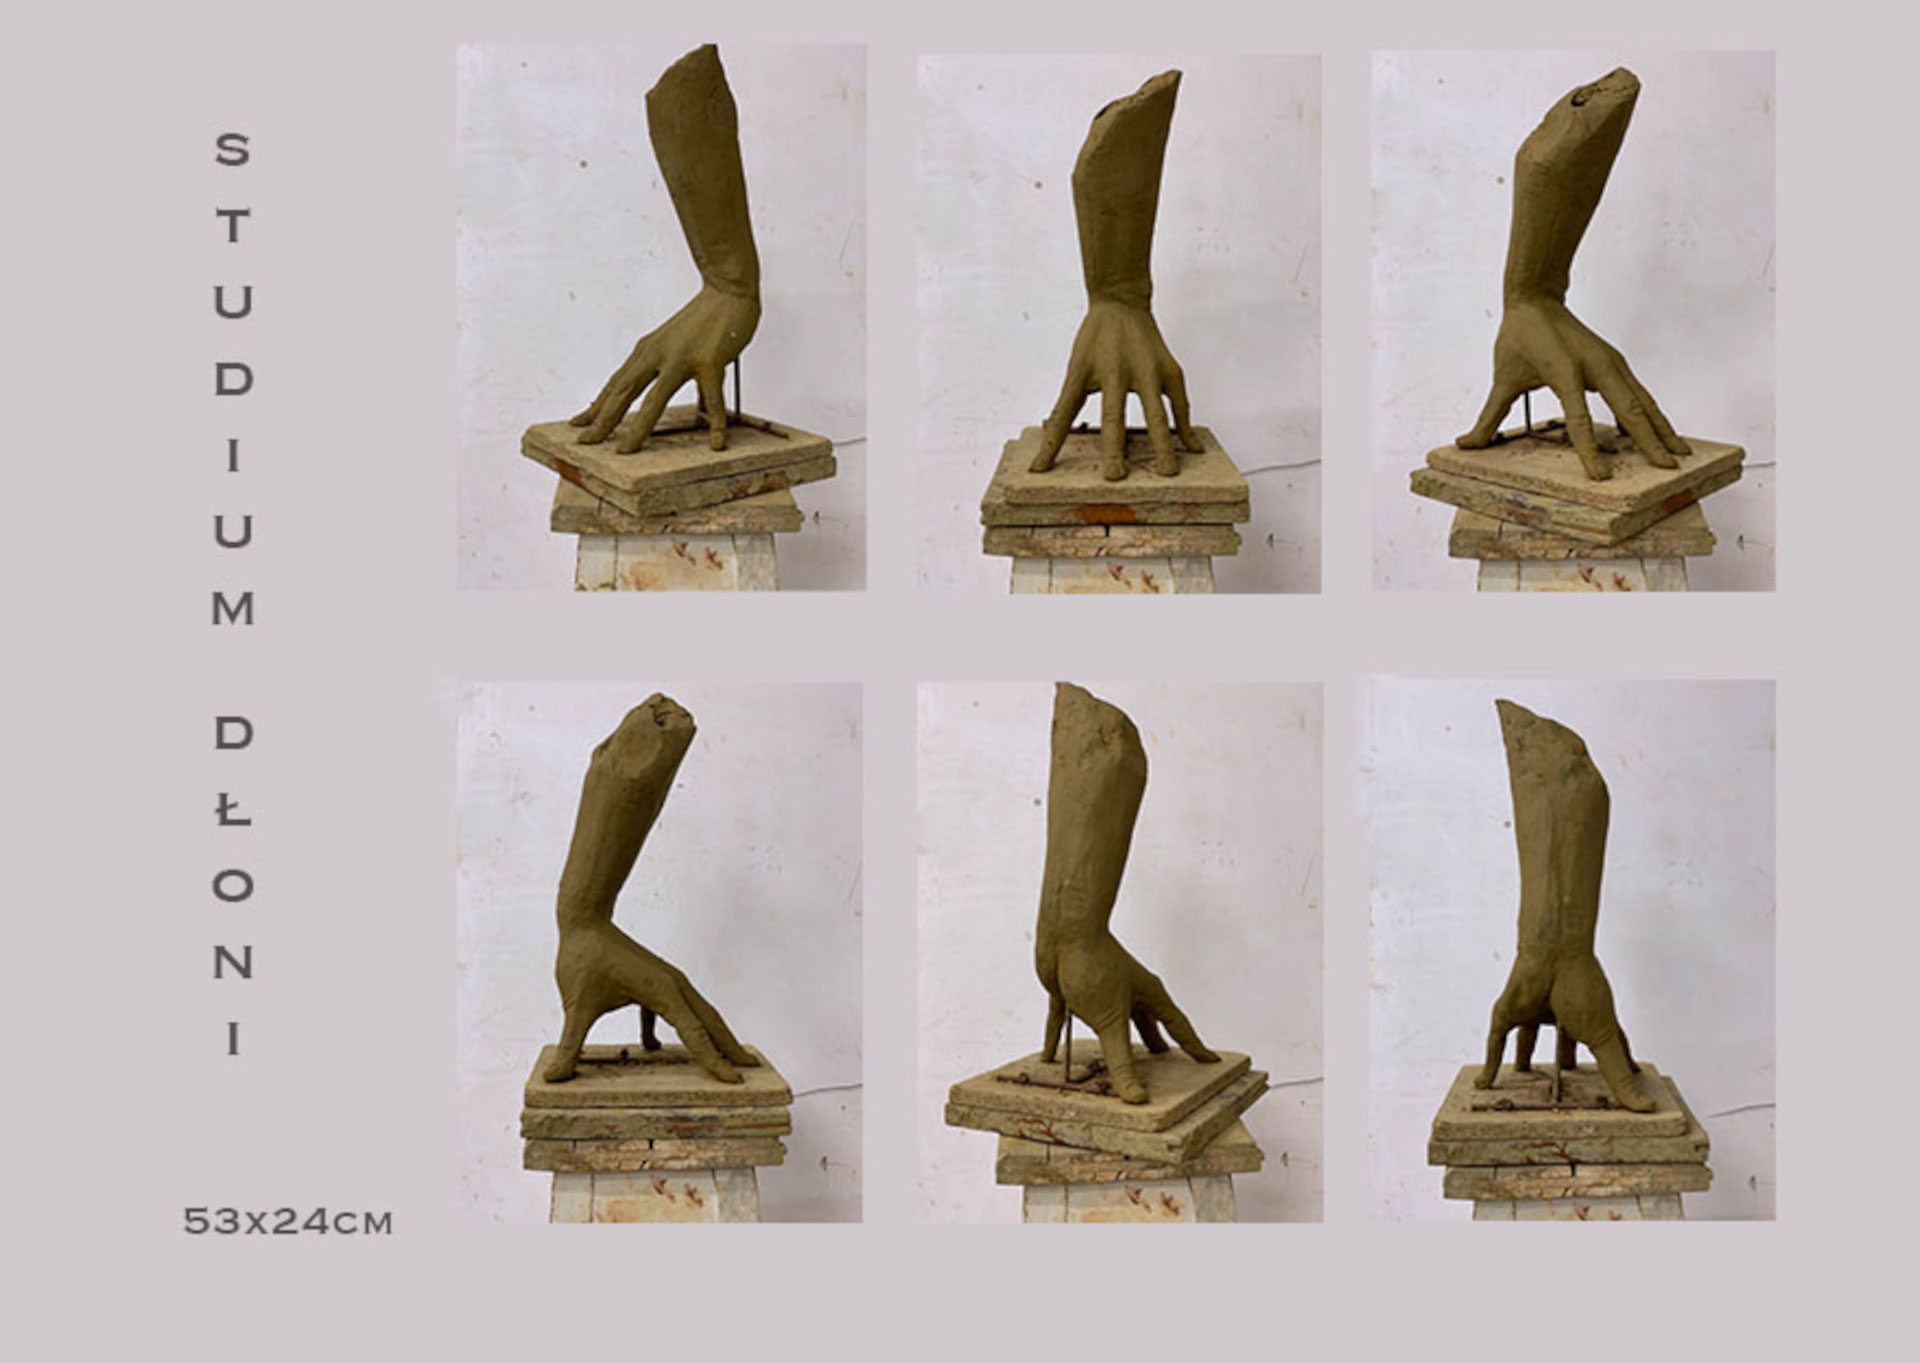 zdjęcie przedstawia studium dłoni opartej na rozszerzonych palcach. Rzeźba wykonana w glinie. Widoczne sześć ujęć. Po lewej stronie podane wymiary 53x24cm